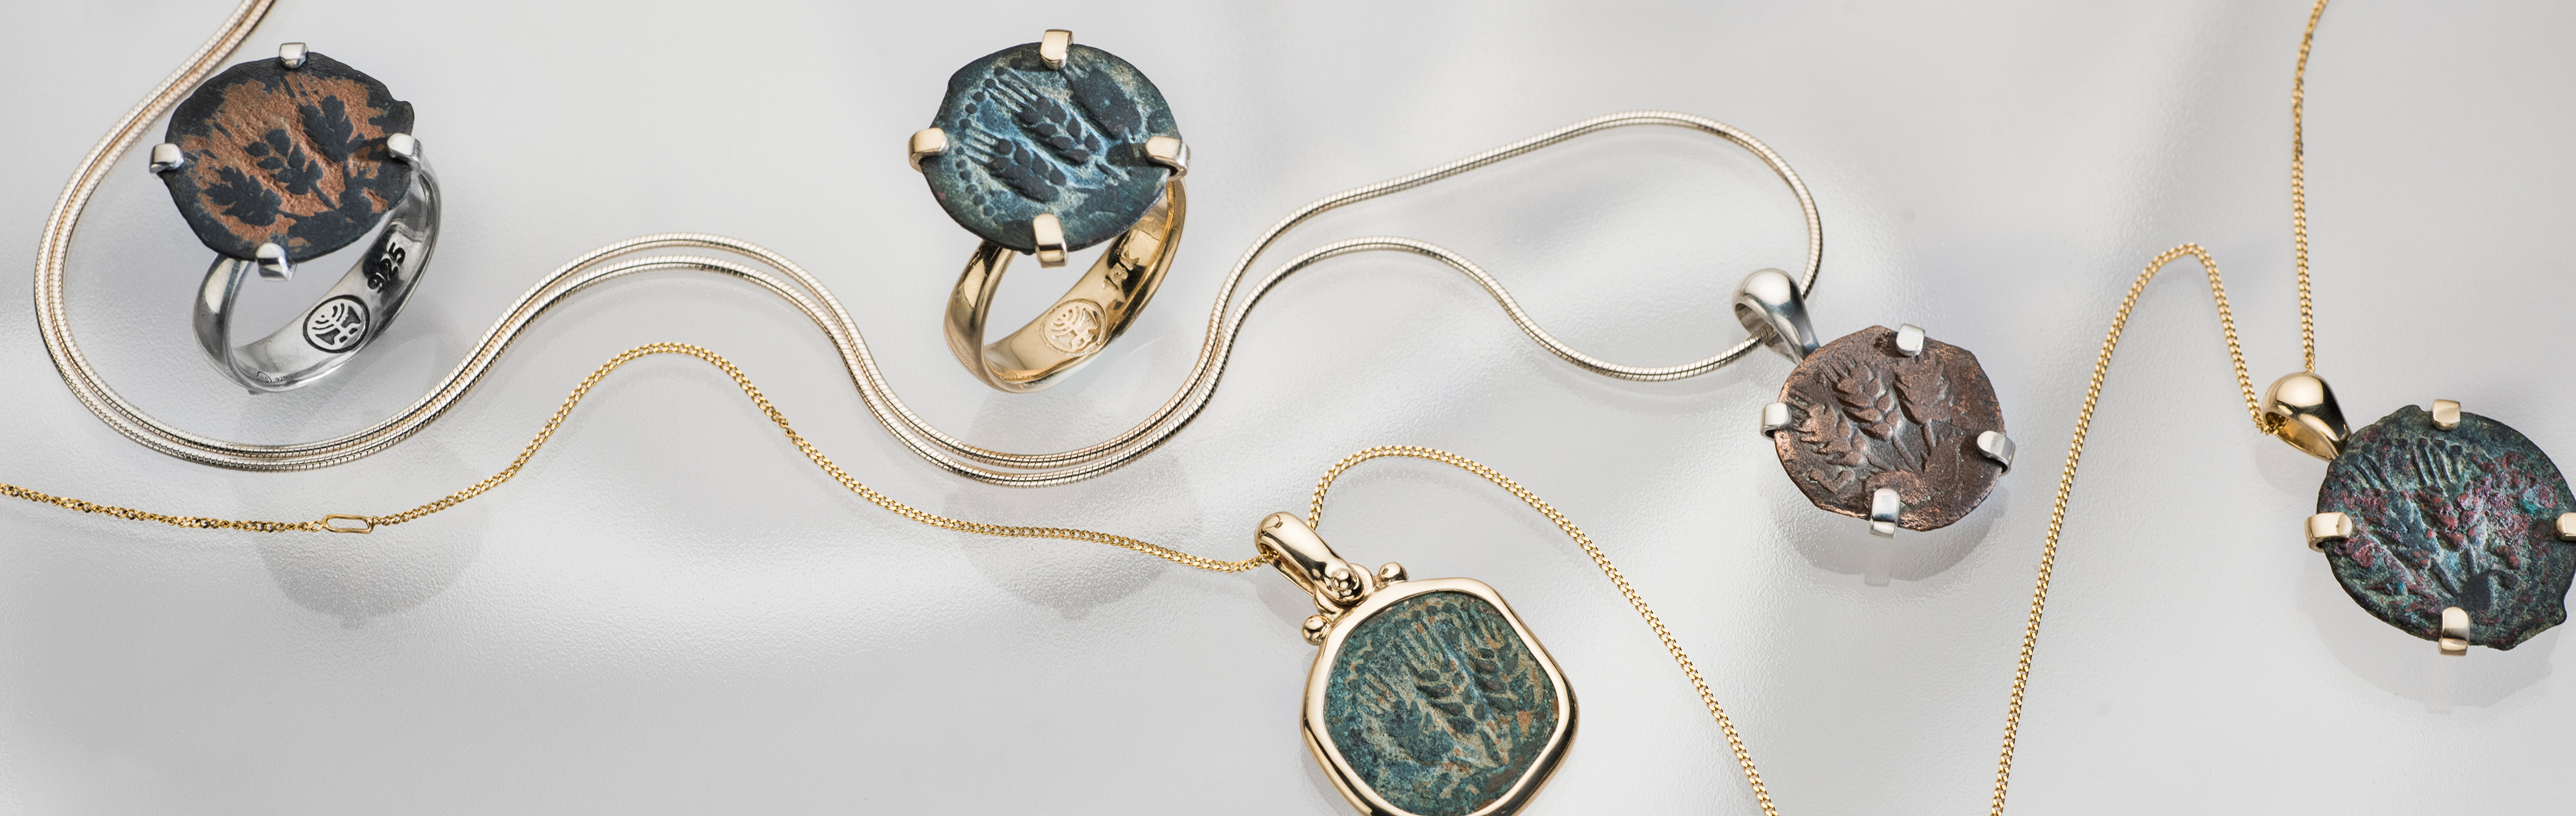 קולקציית תכשיטי מטבע עתיק - תכשיטי זהב וכסף בשילוב מטבעות עתיקים